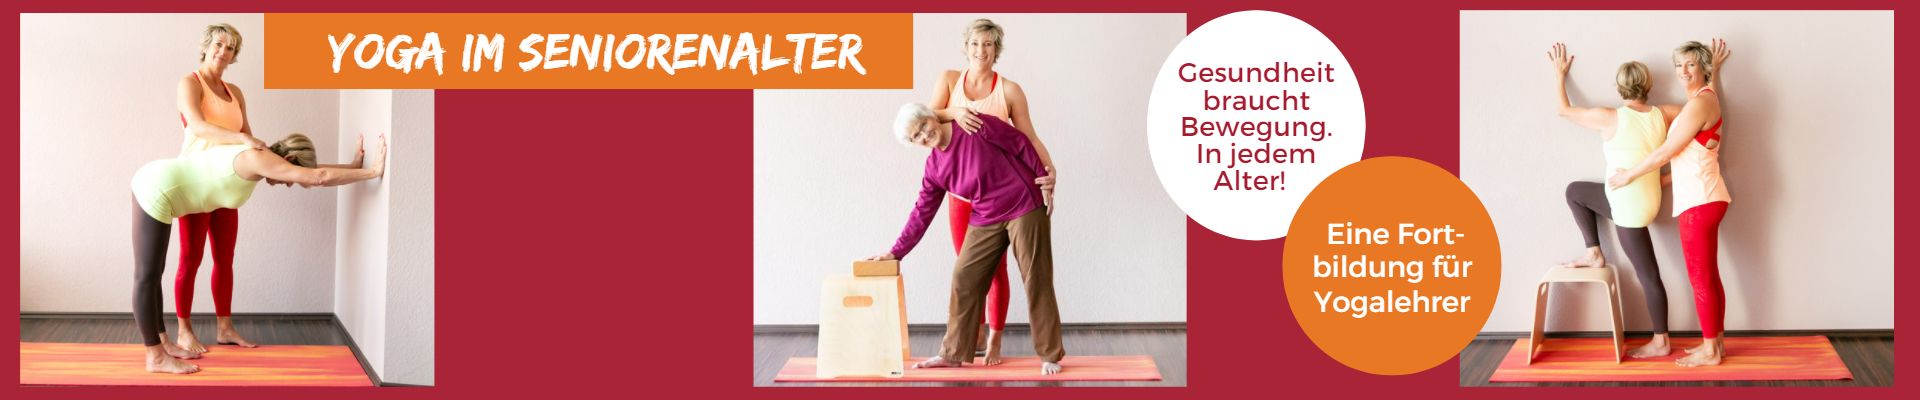 Fortbildung für Yogalehrer:innen - Yoga im Seniorenalter bei 1fachYoga in Büttelborn